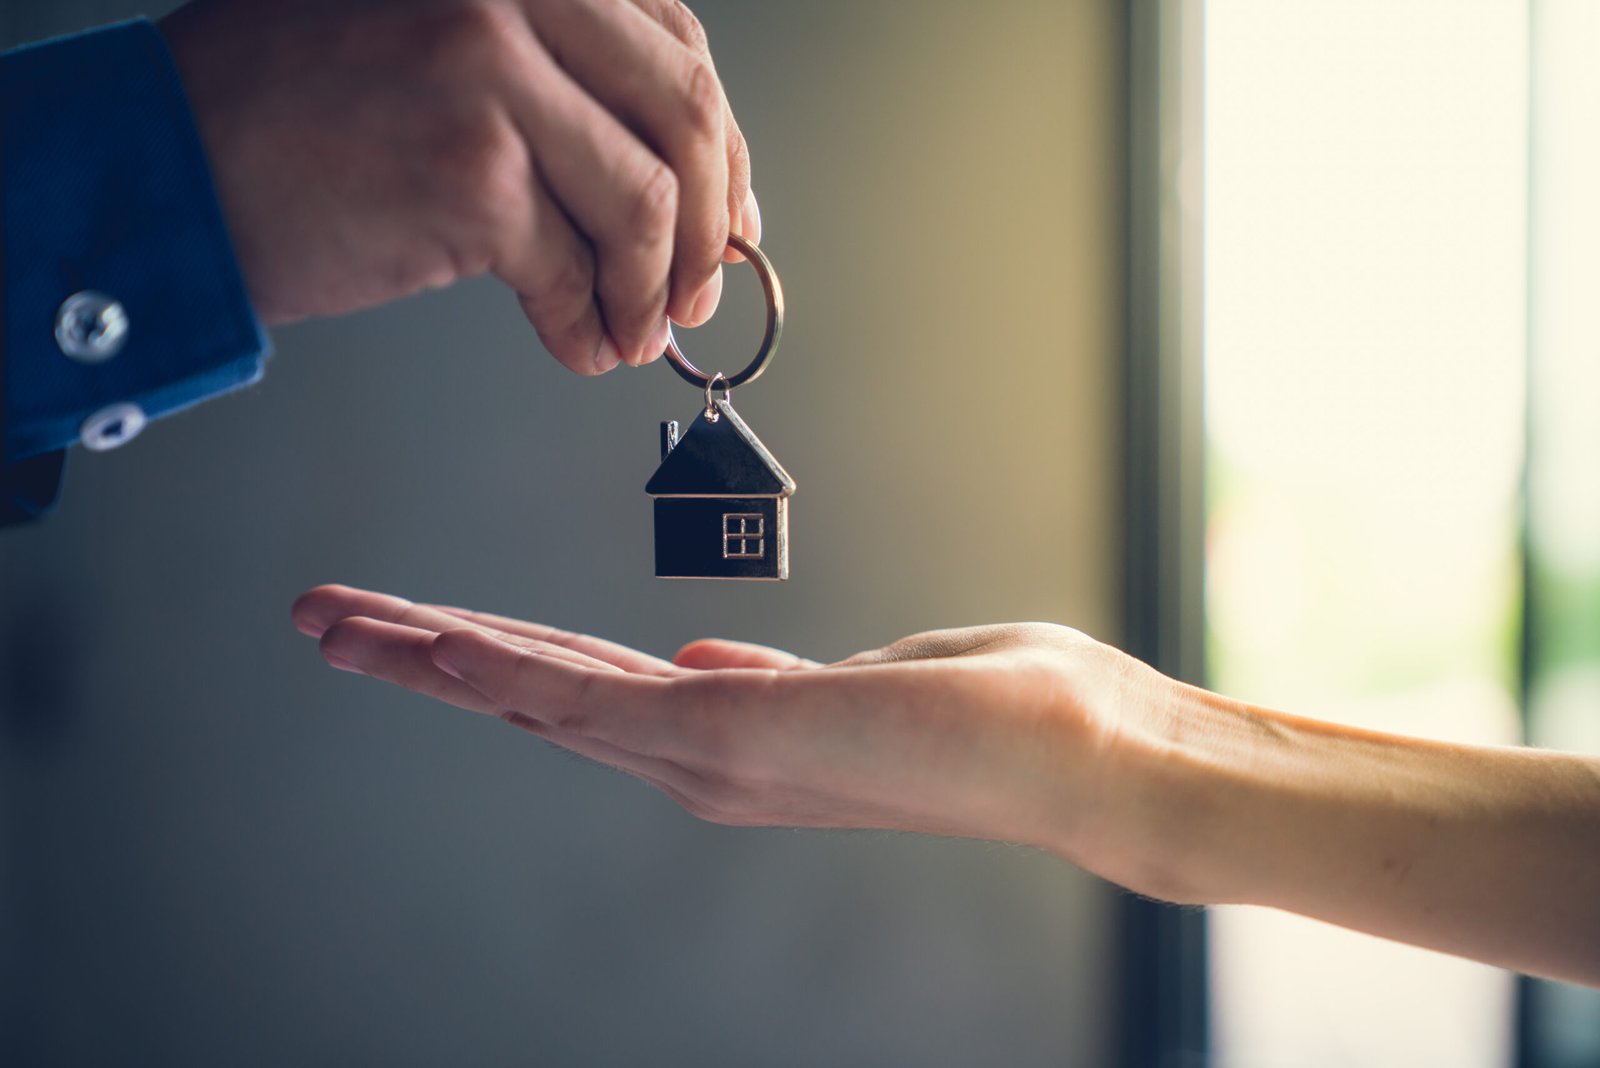 Le transfert d'une clé de maison symbolique d'une main à une autre dans un contexte lumineux et flou, suggérant une transaction immobilière réussie et l'excitation d'un nouveau départ.